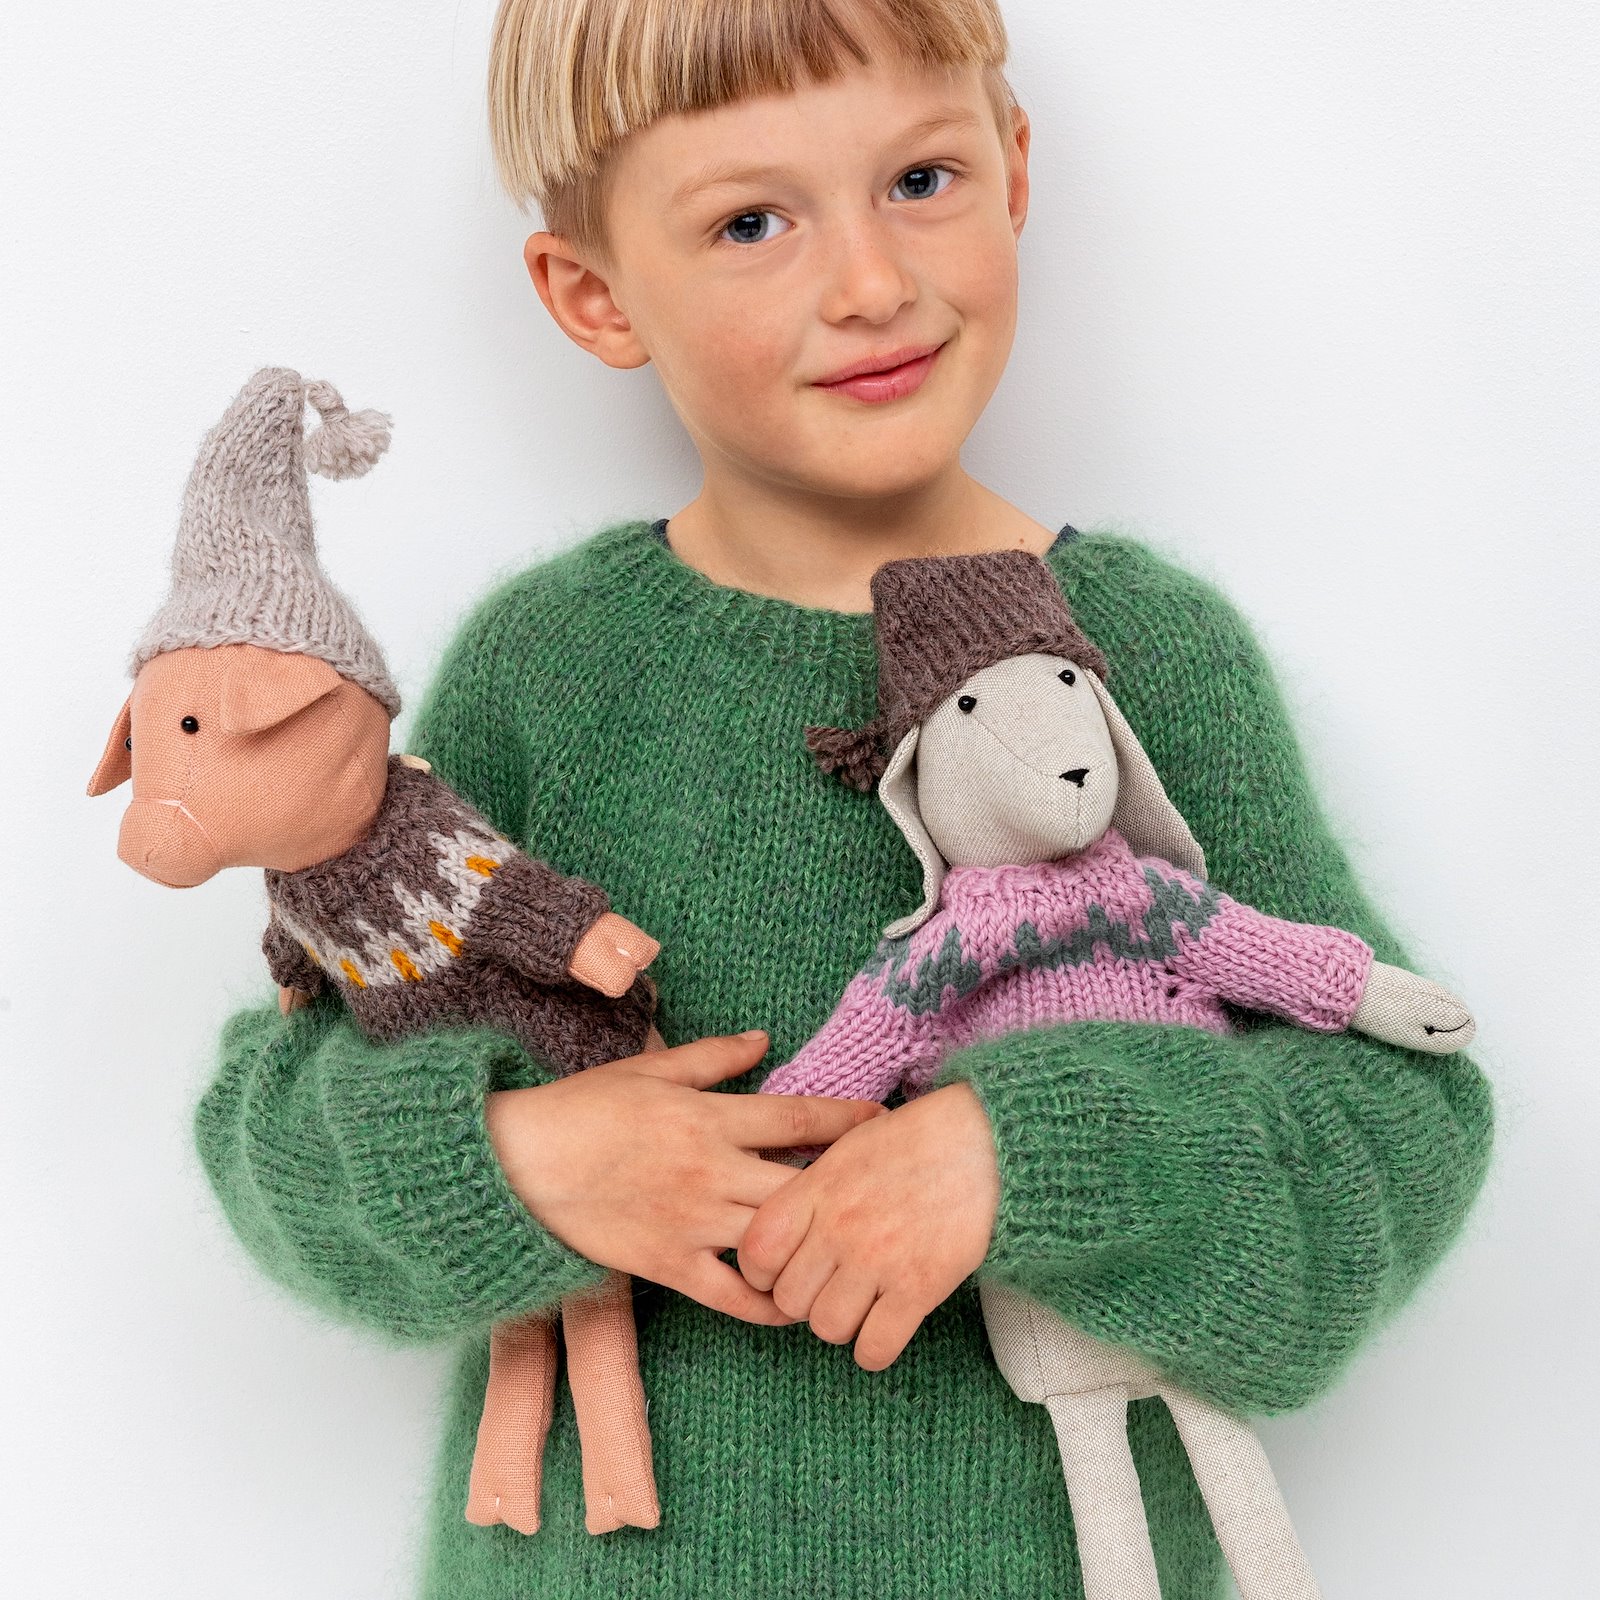 FRAYA knitting pattern - Woofy Sweater, cuddly toys p90350_410139_FRAYA7028_90063109_90063137_90063176_bundle